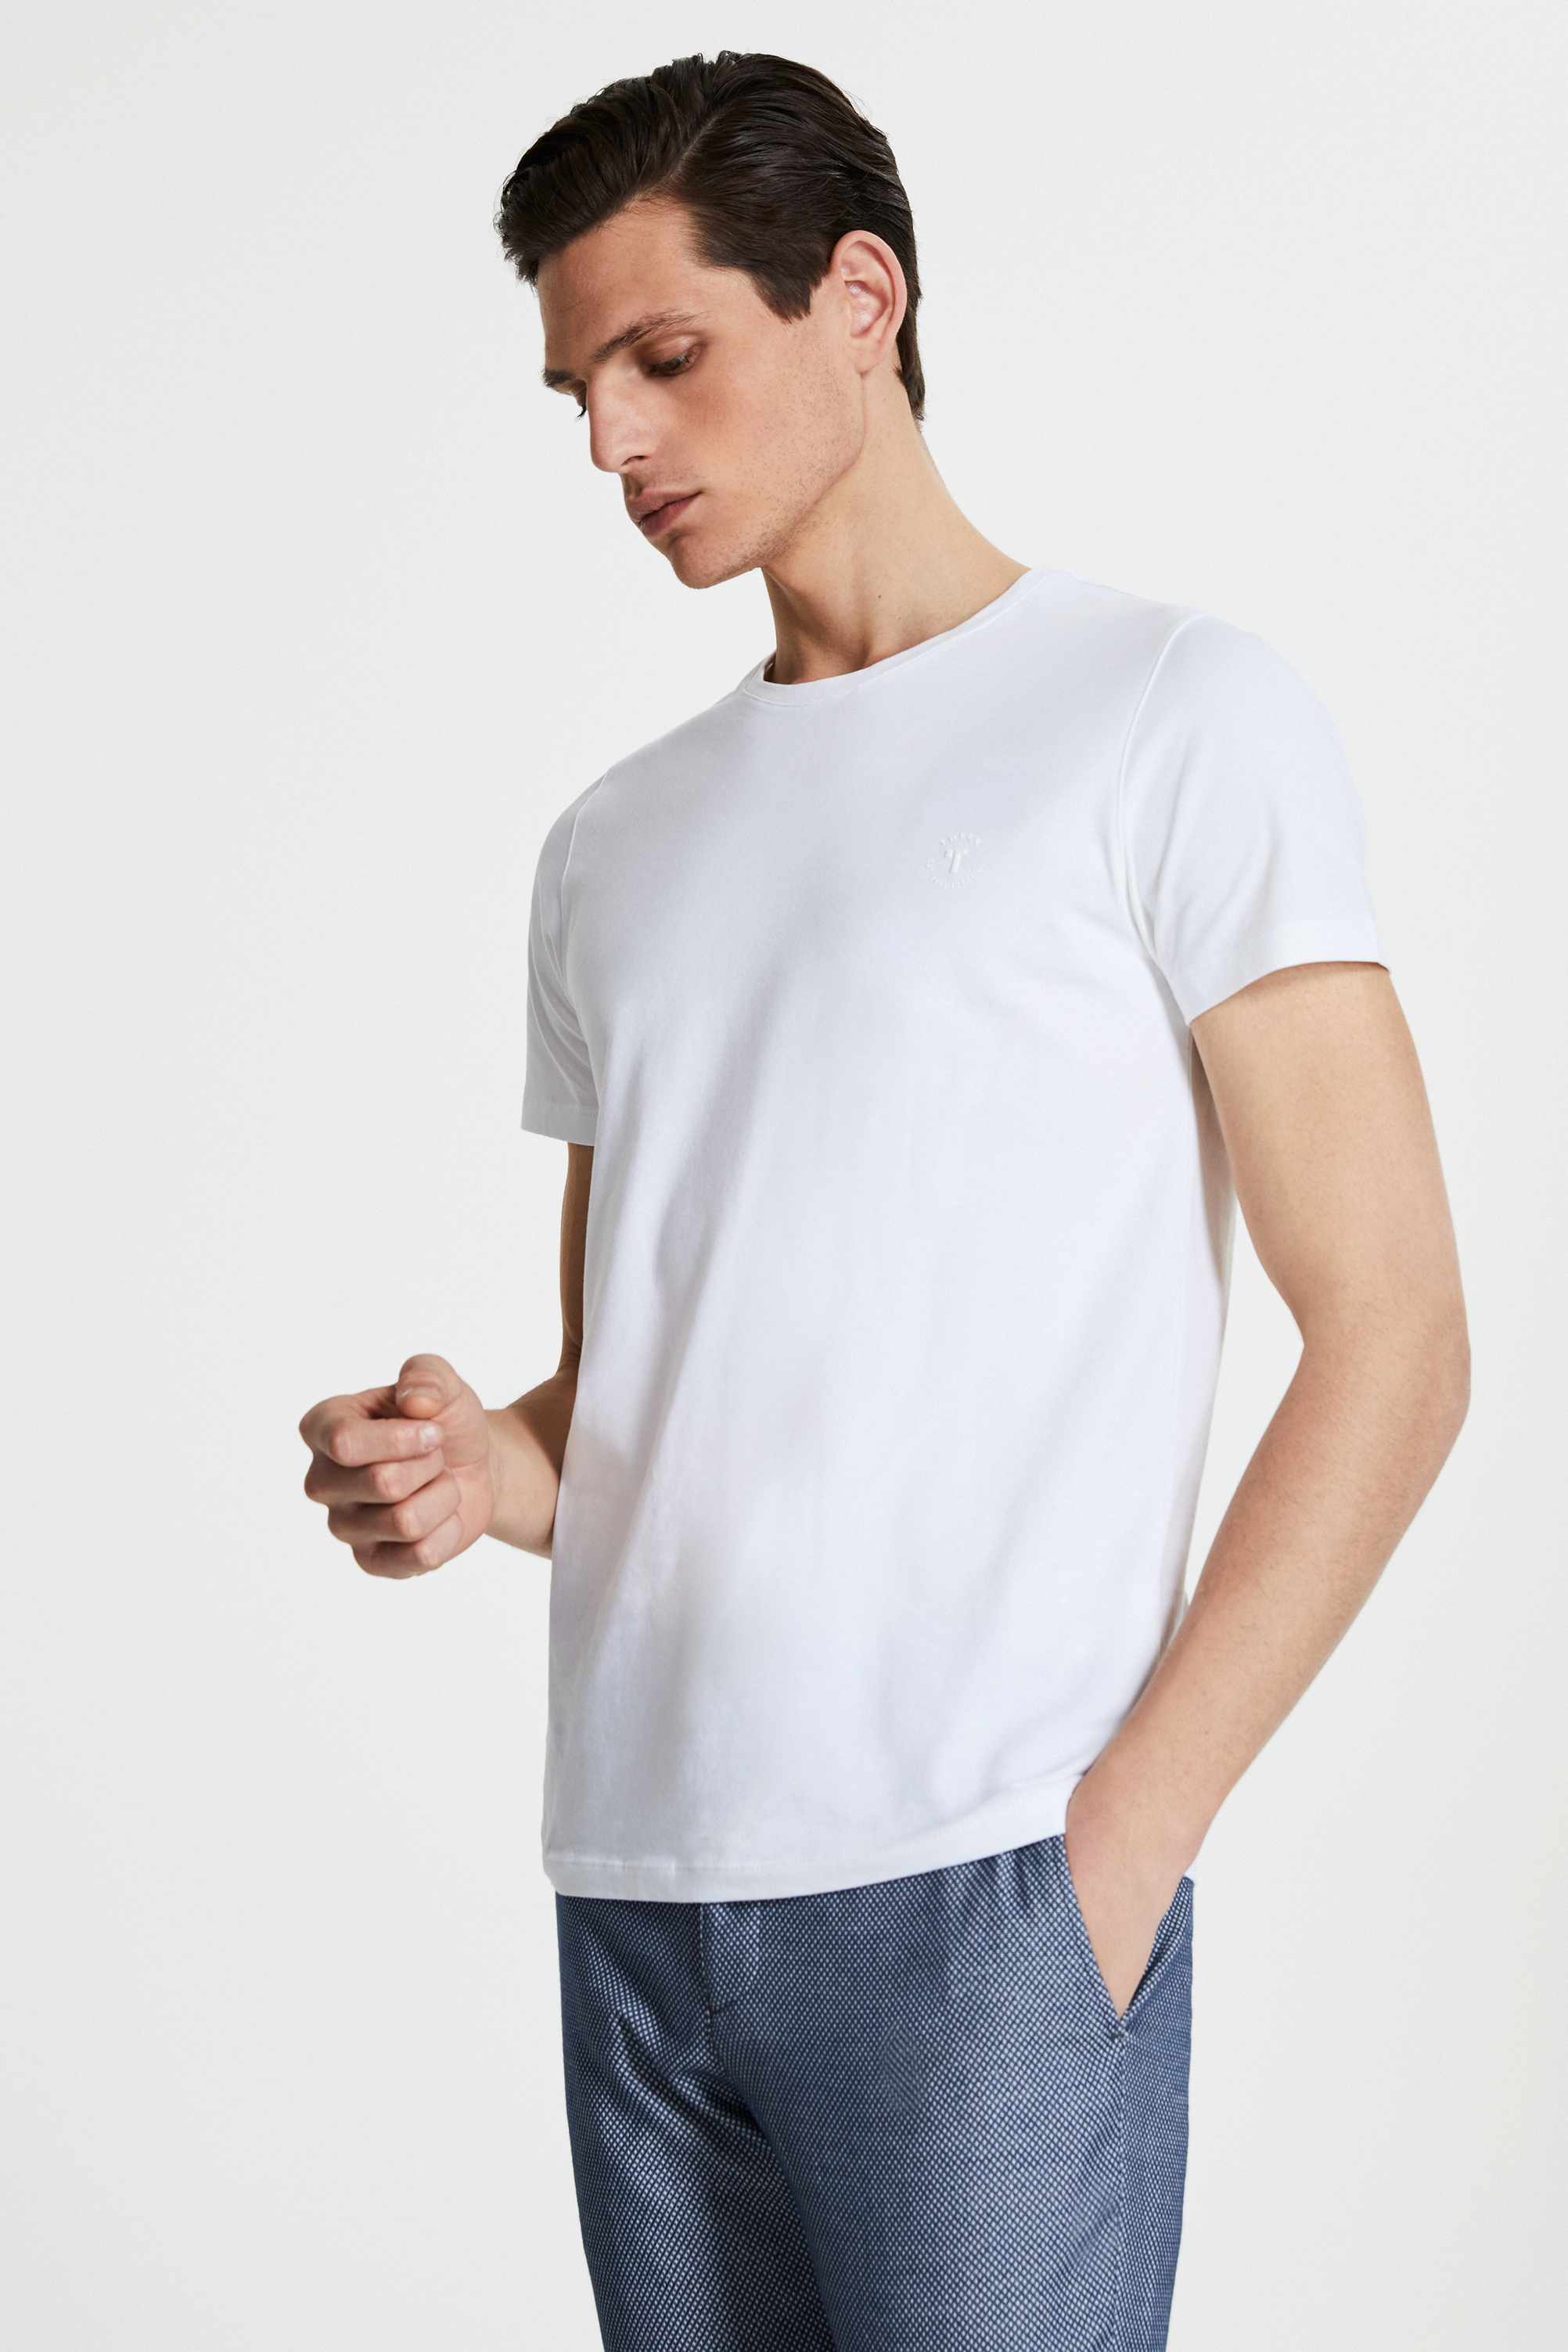 Damat Tween Tween Beyaz Baskılı T-shirt. 1